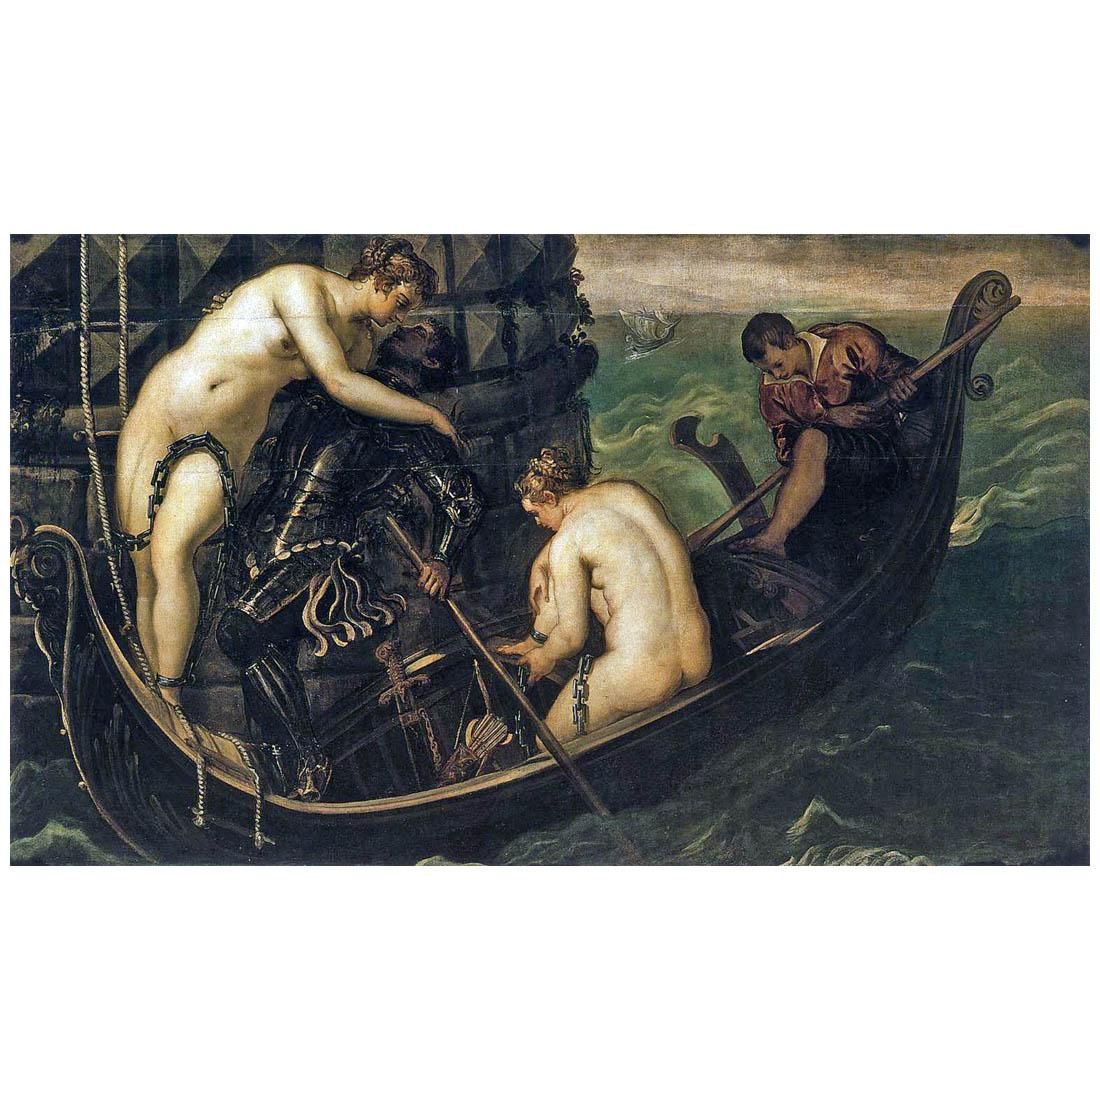 Tintoretto. La liberazione di Arsinoe. 1556. Gemaldegalerie, Dresden